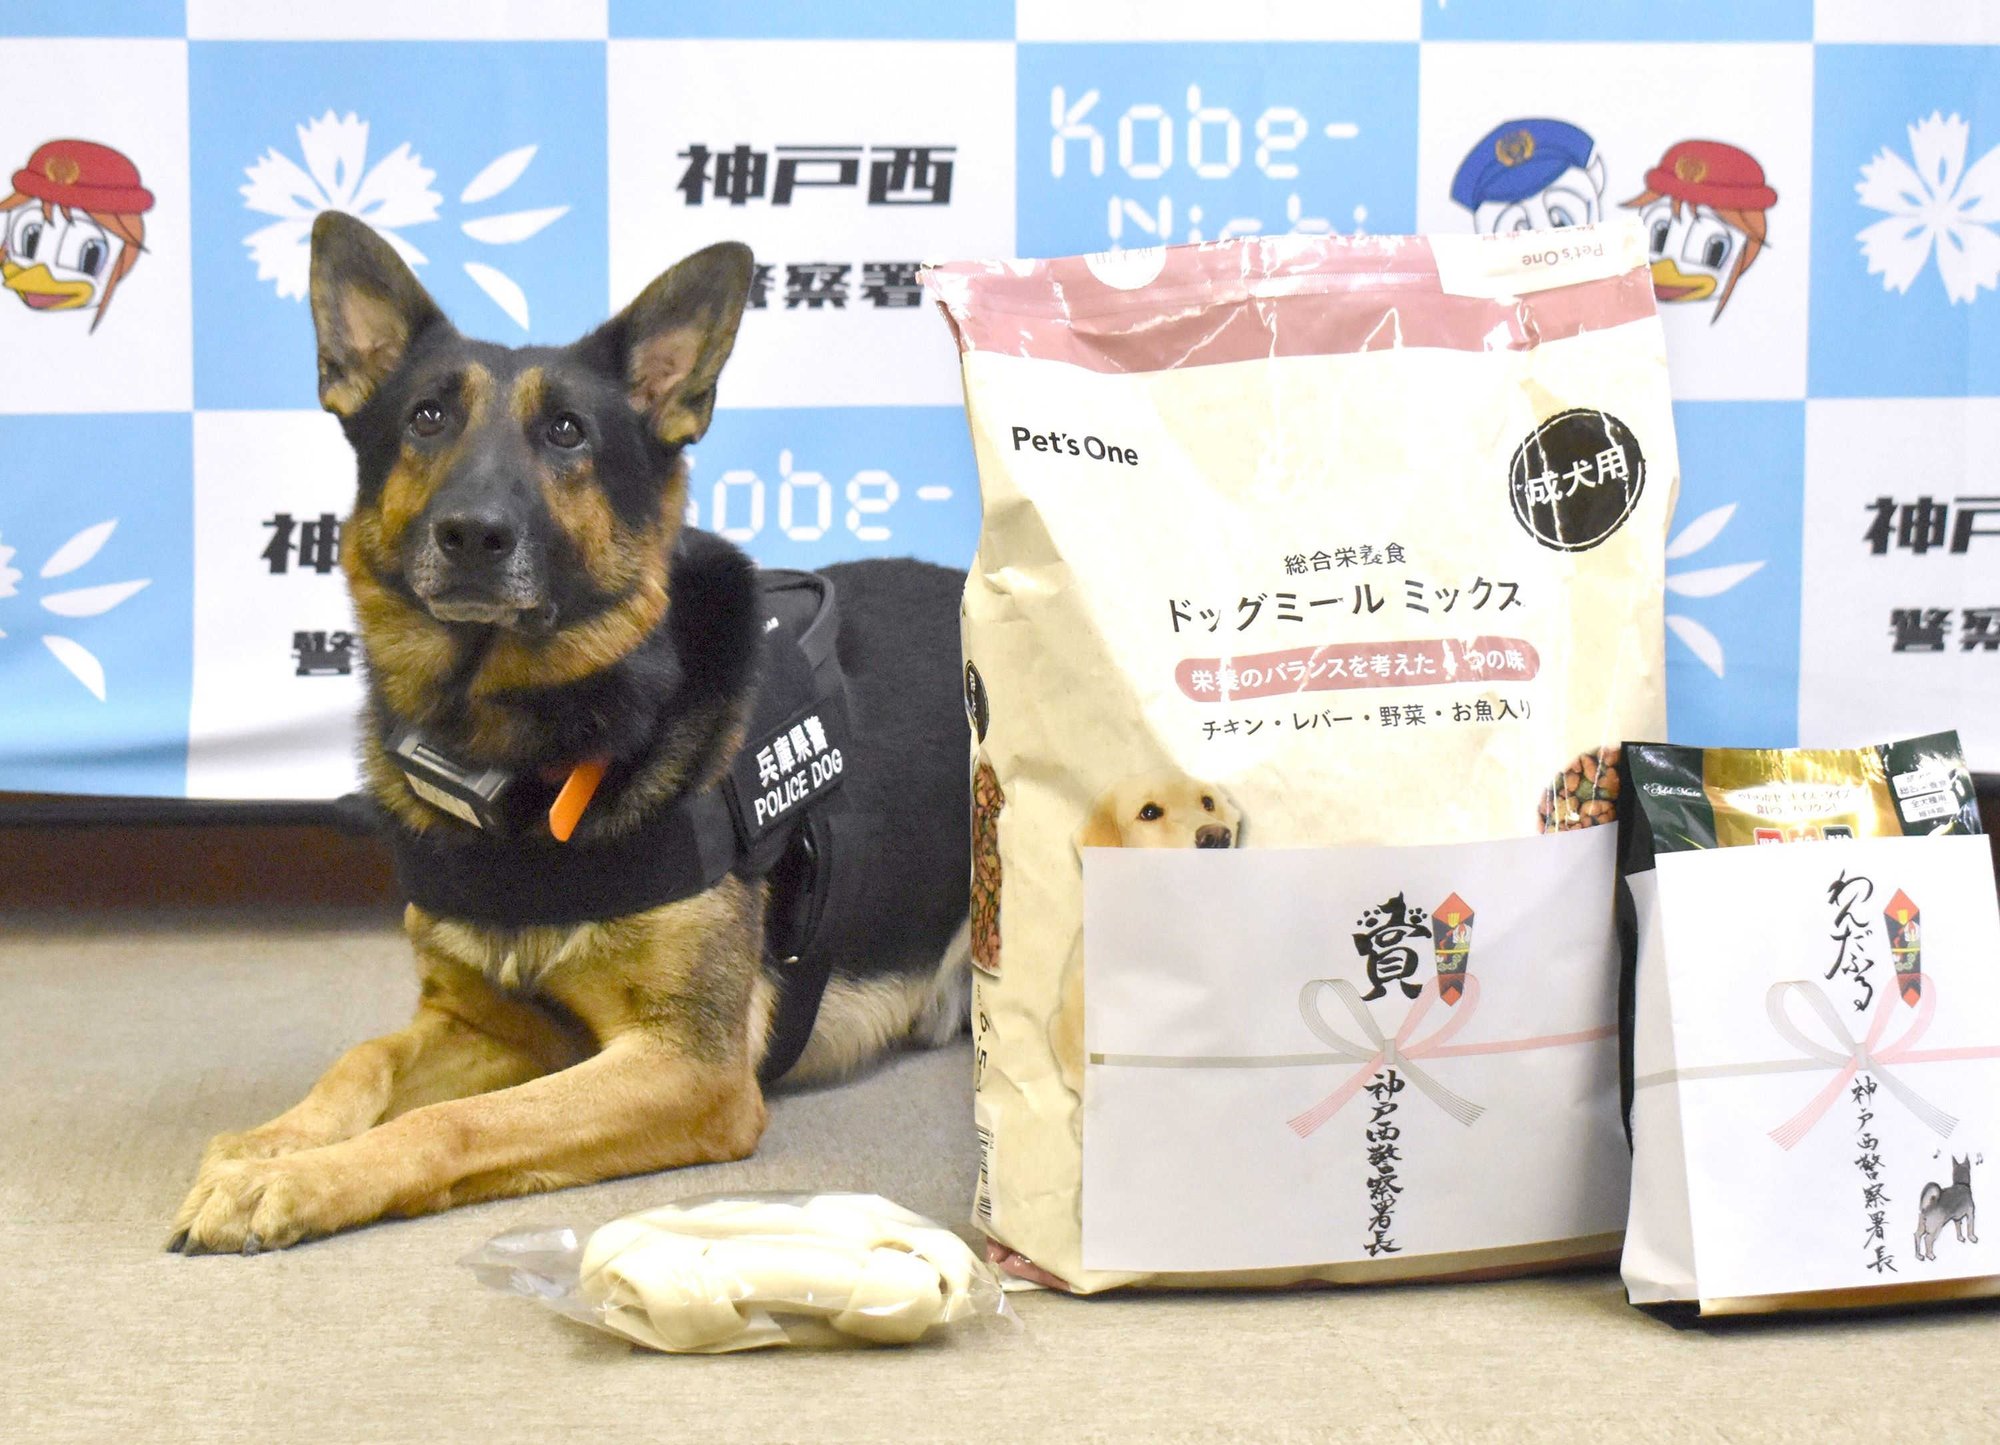 かすかな臭いを手がかりに 警察犬の世界 神戸新聞公式 うっとこ兵庫